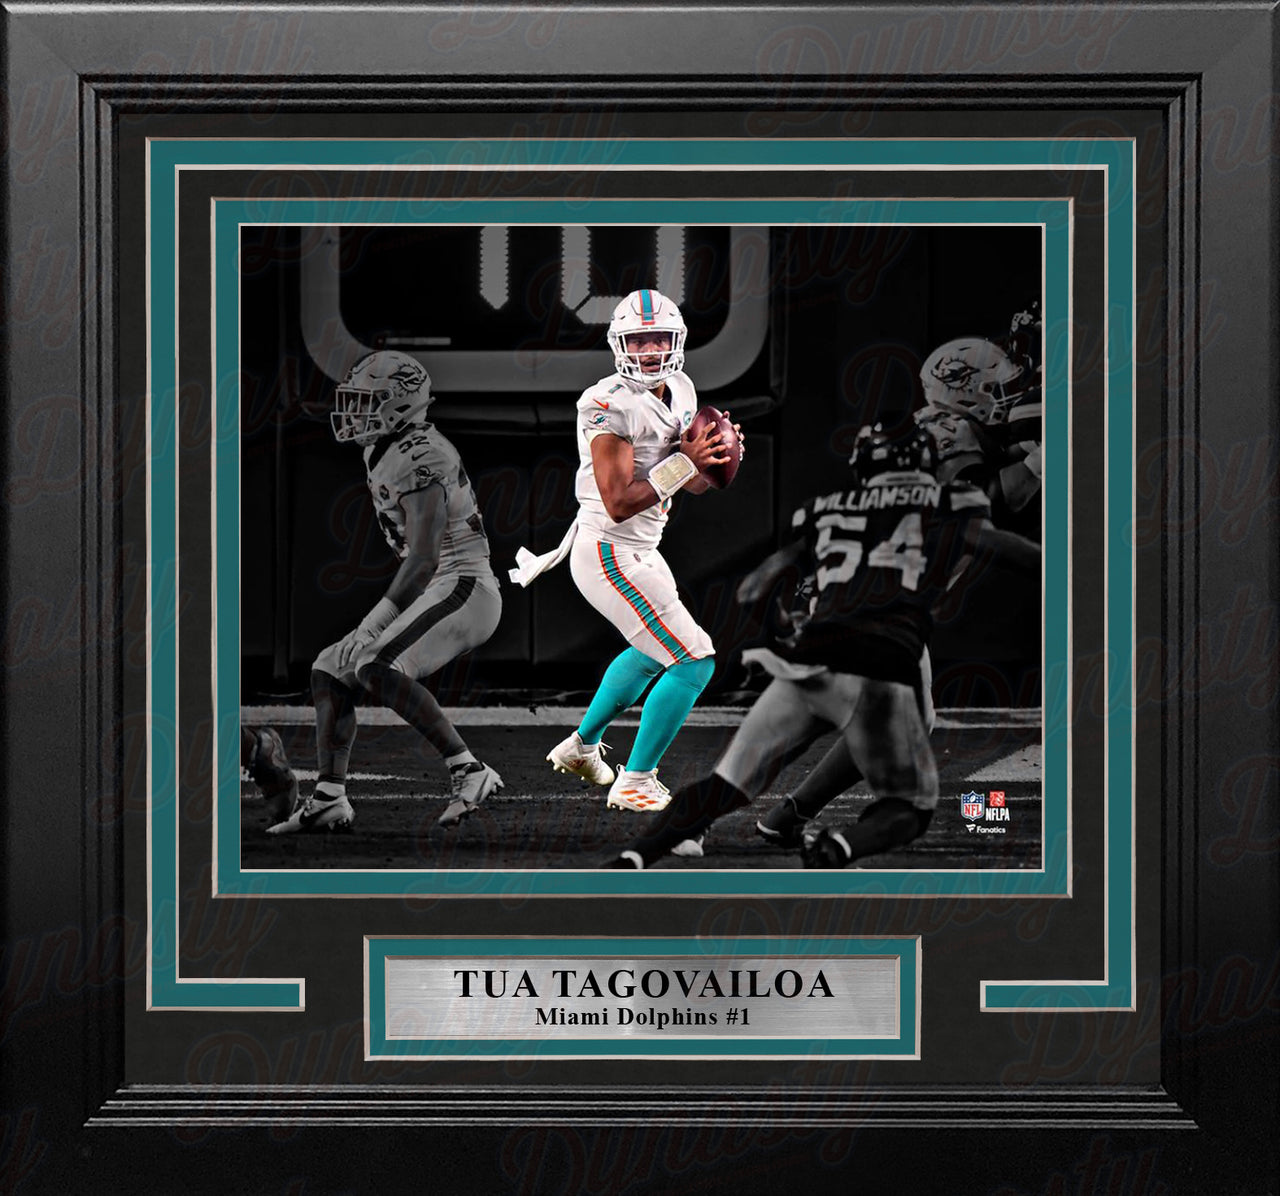 Tua Tagovailoa in Action Miami Dolphins 8" x 10" Framed Blackout Football Photo - Dynasty Sports & Framing 